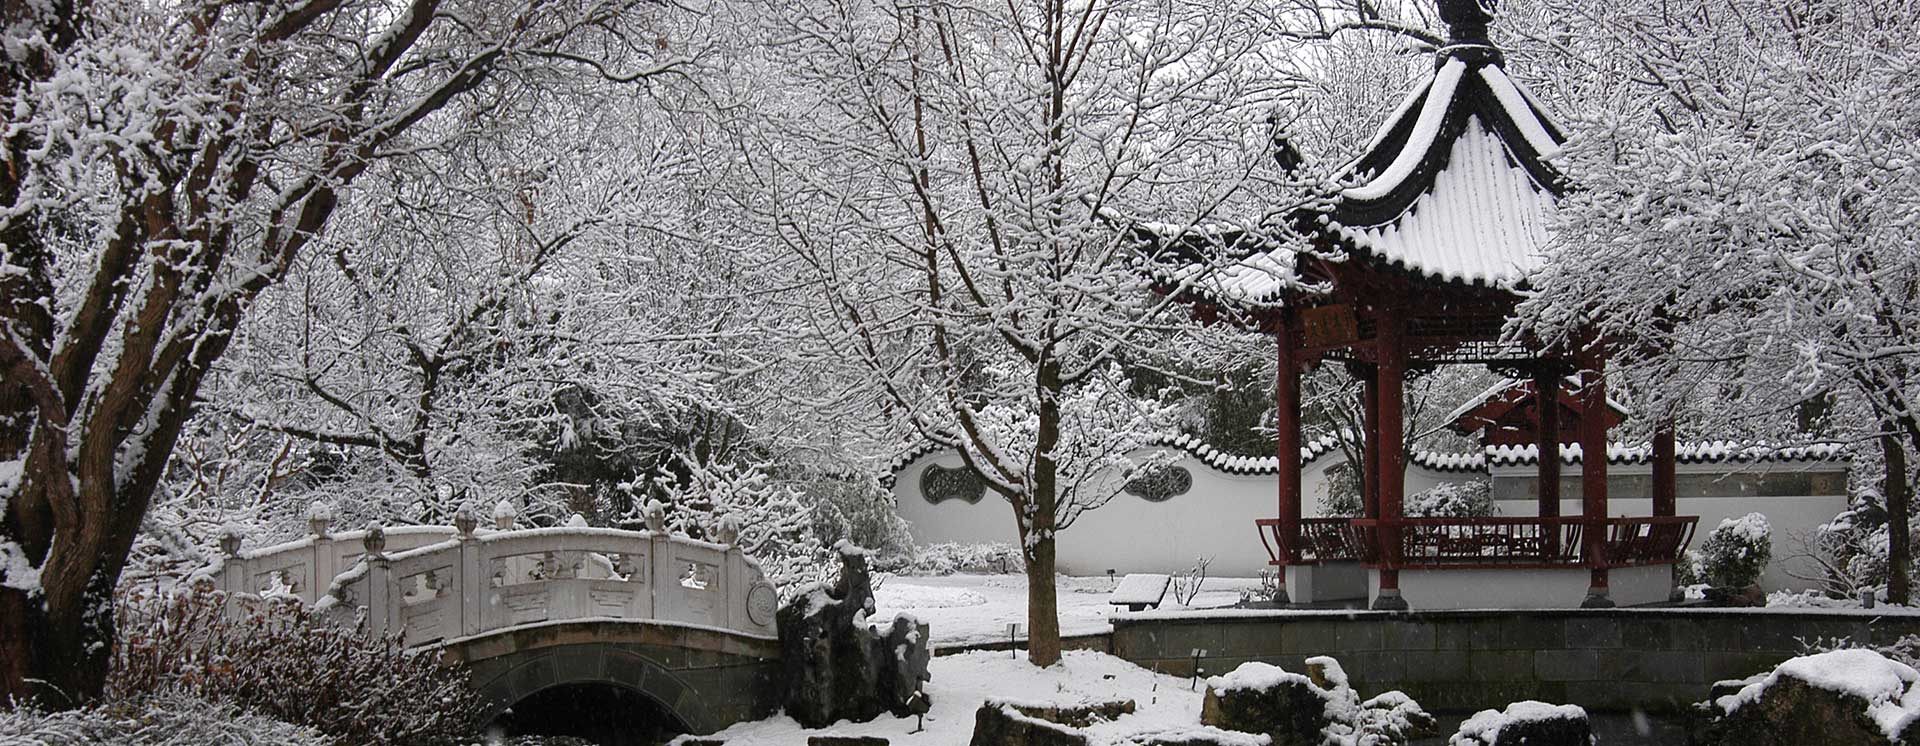 Japanese garden in a snow